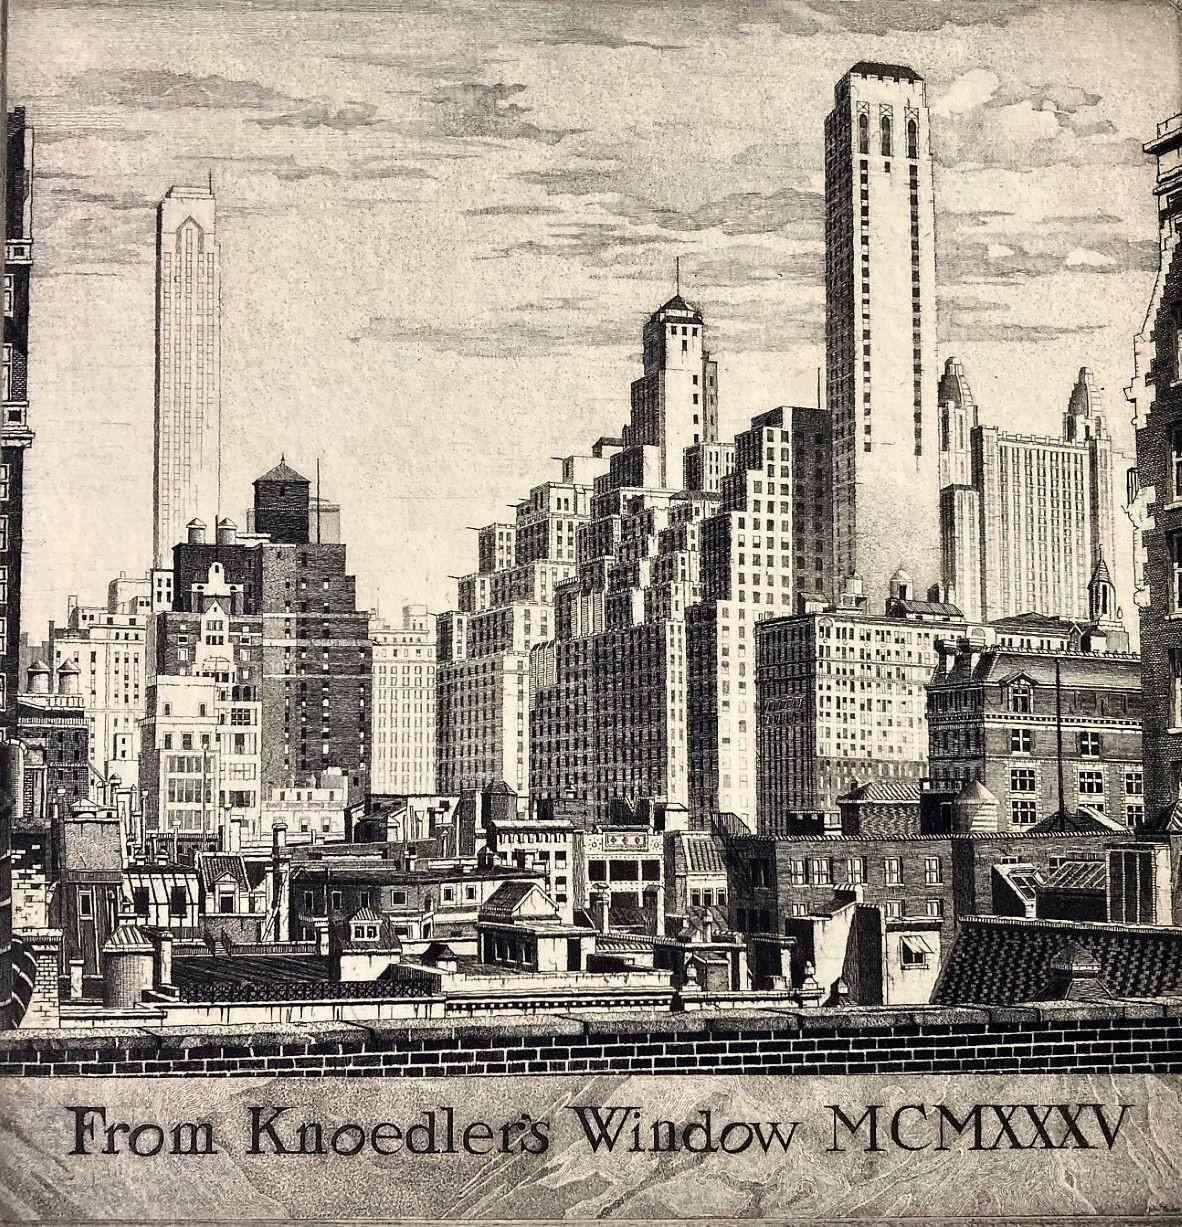 De la fenêtre de Knoedler's Window MCMXXXV